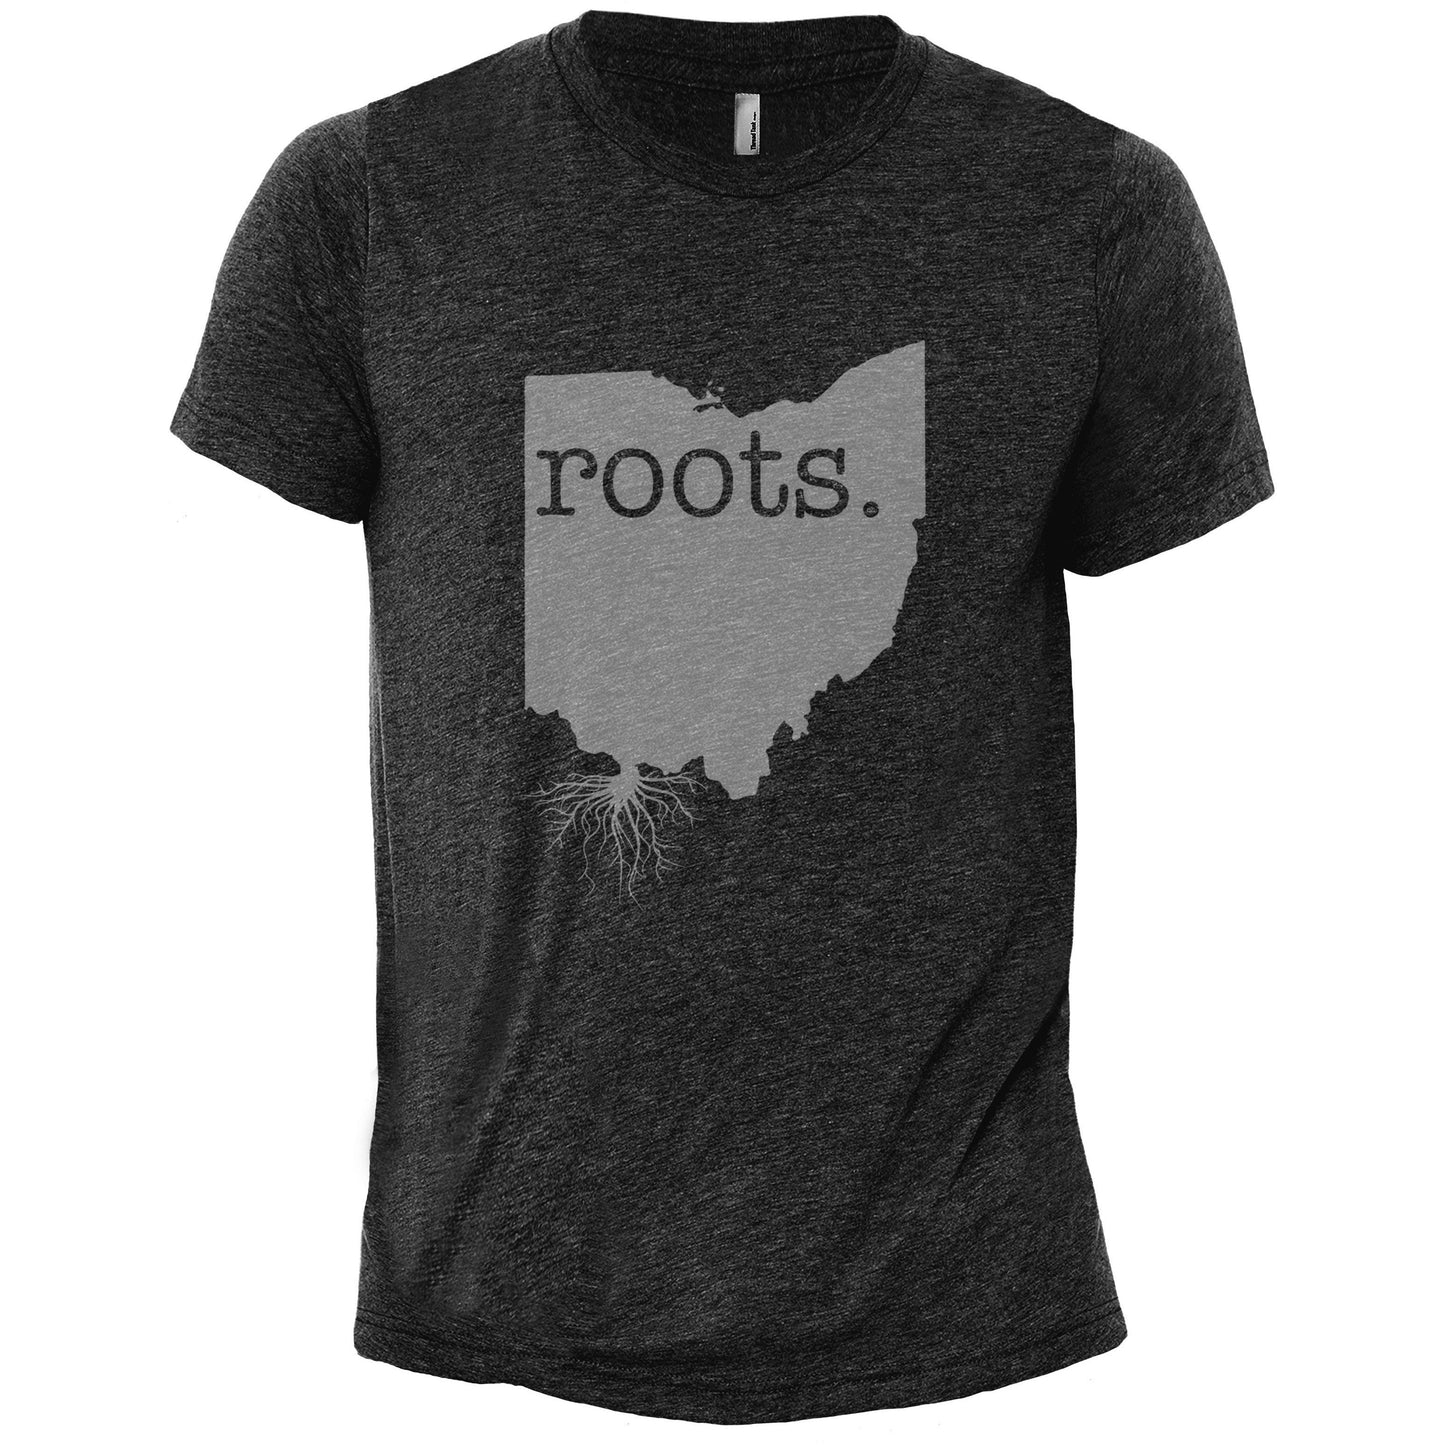 Roots Ohio OH